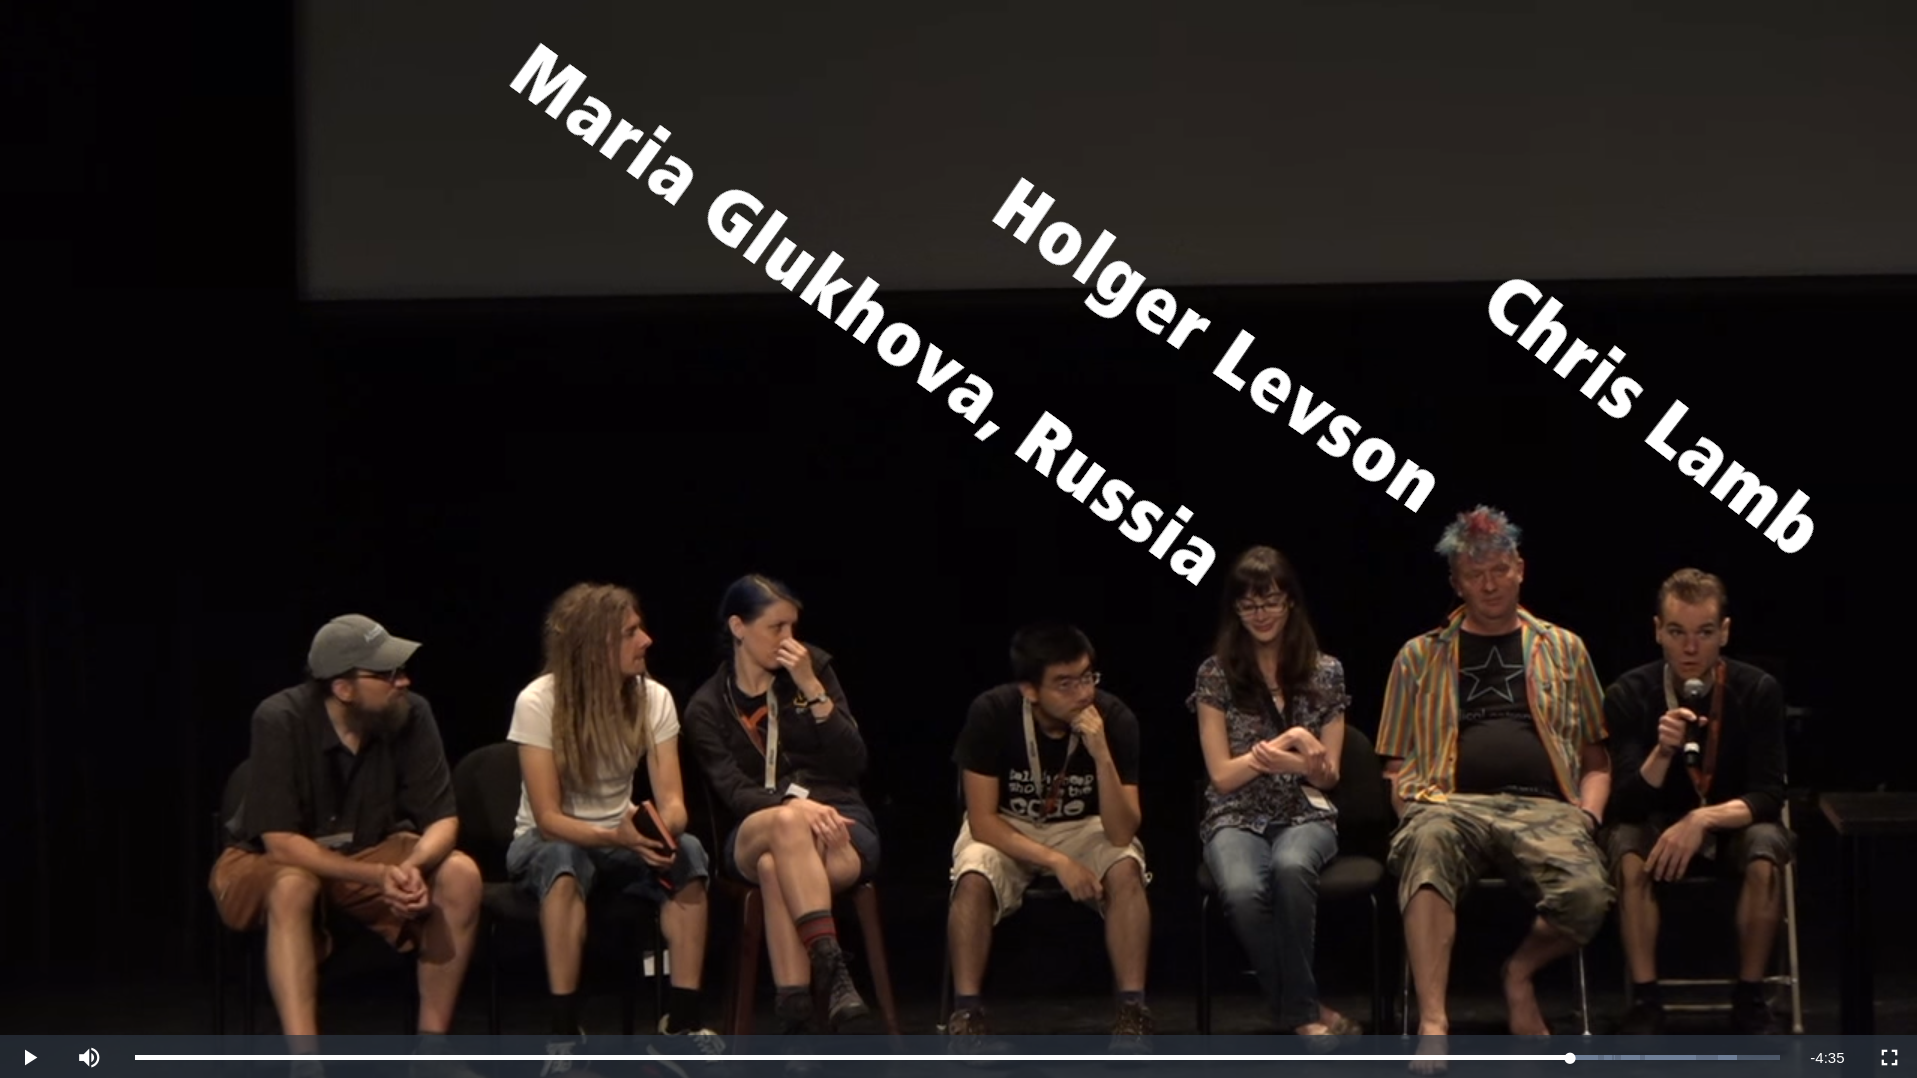 Maria Glukhova, siamezzze, Holger Levson, Chris Lamb, Debian, Russia, debconf17